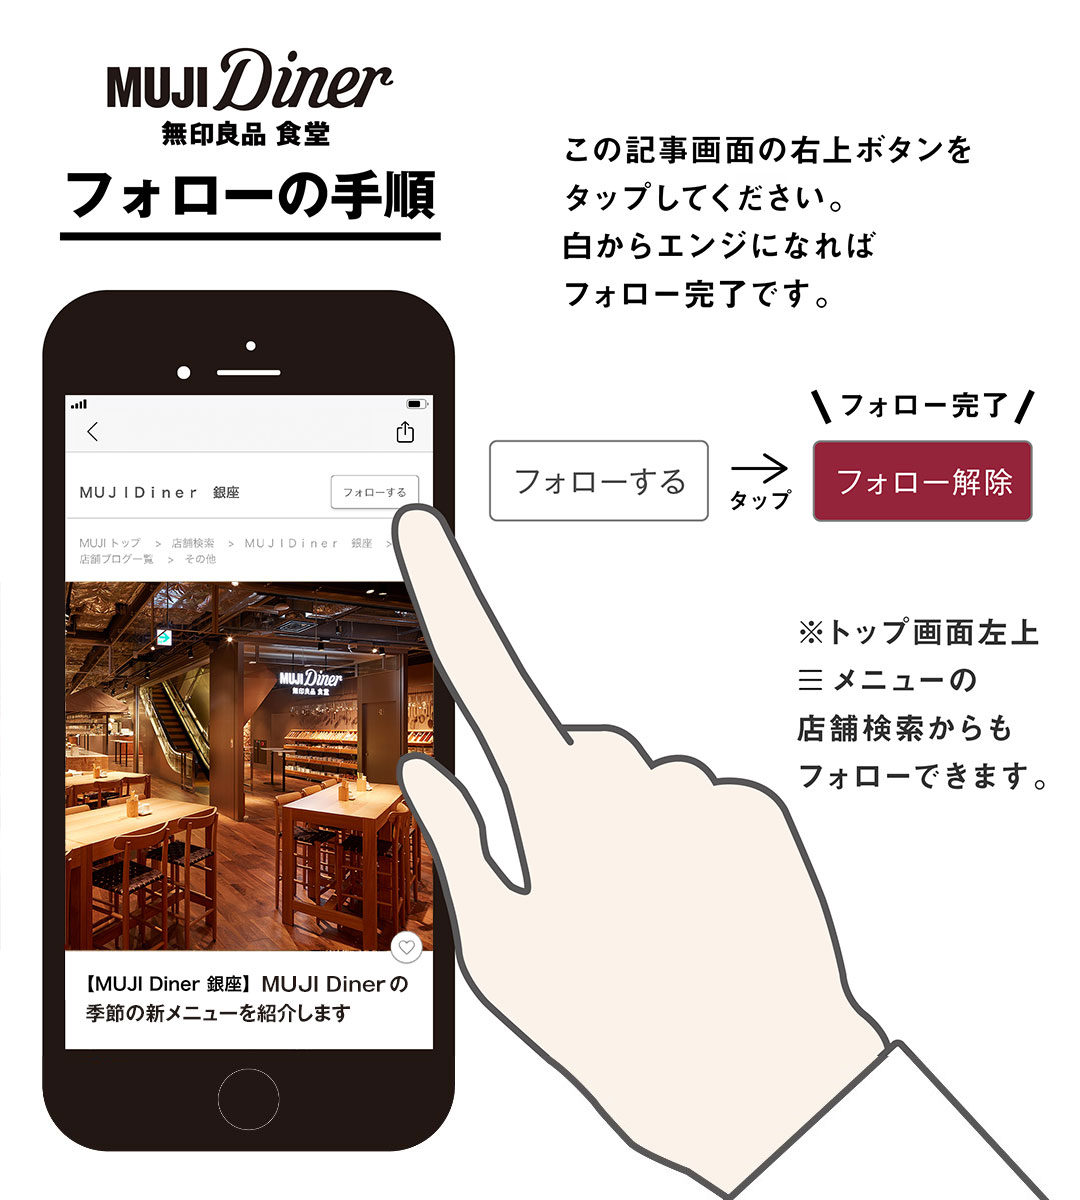 【MUJI Diner 銀座】